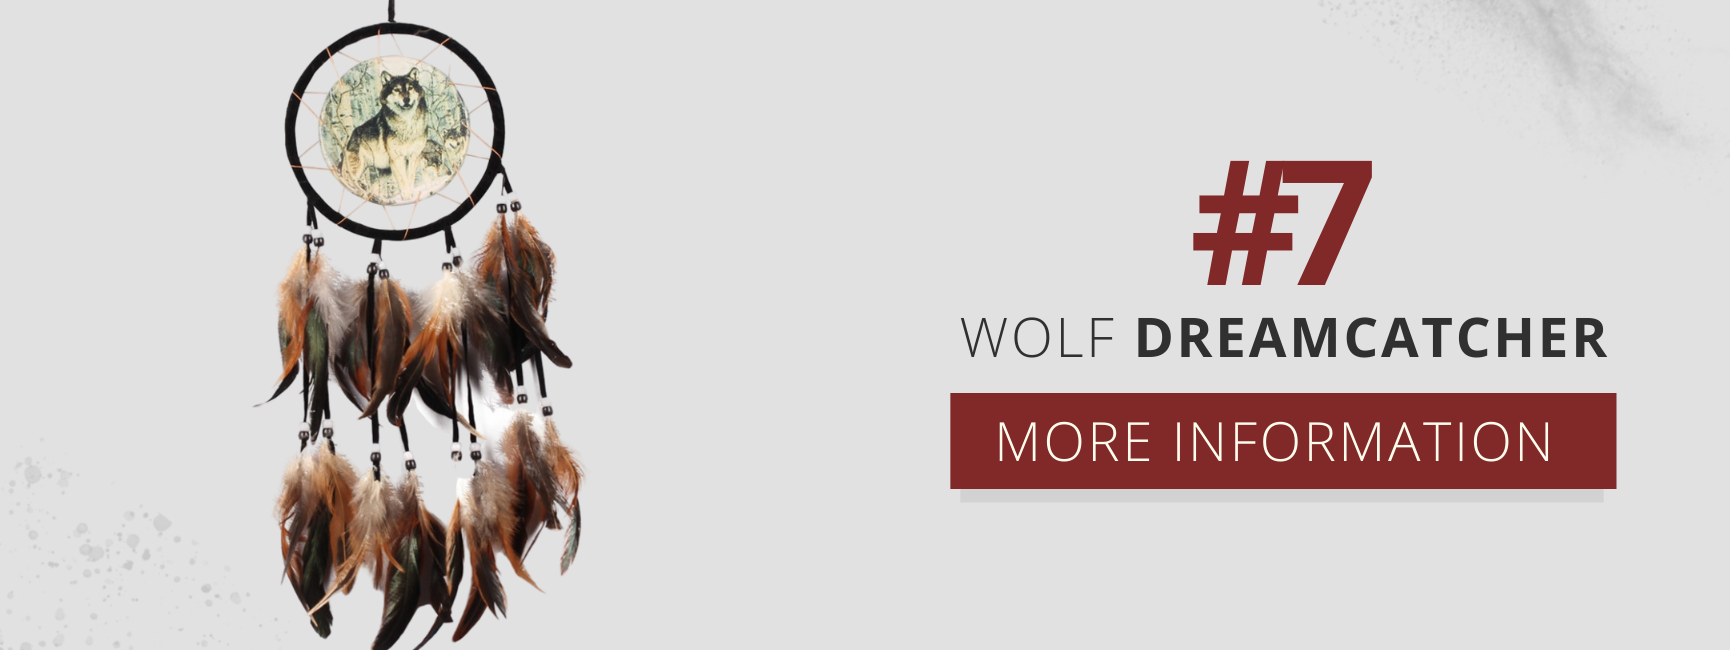 wolf dreamcatcher